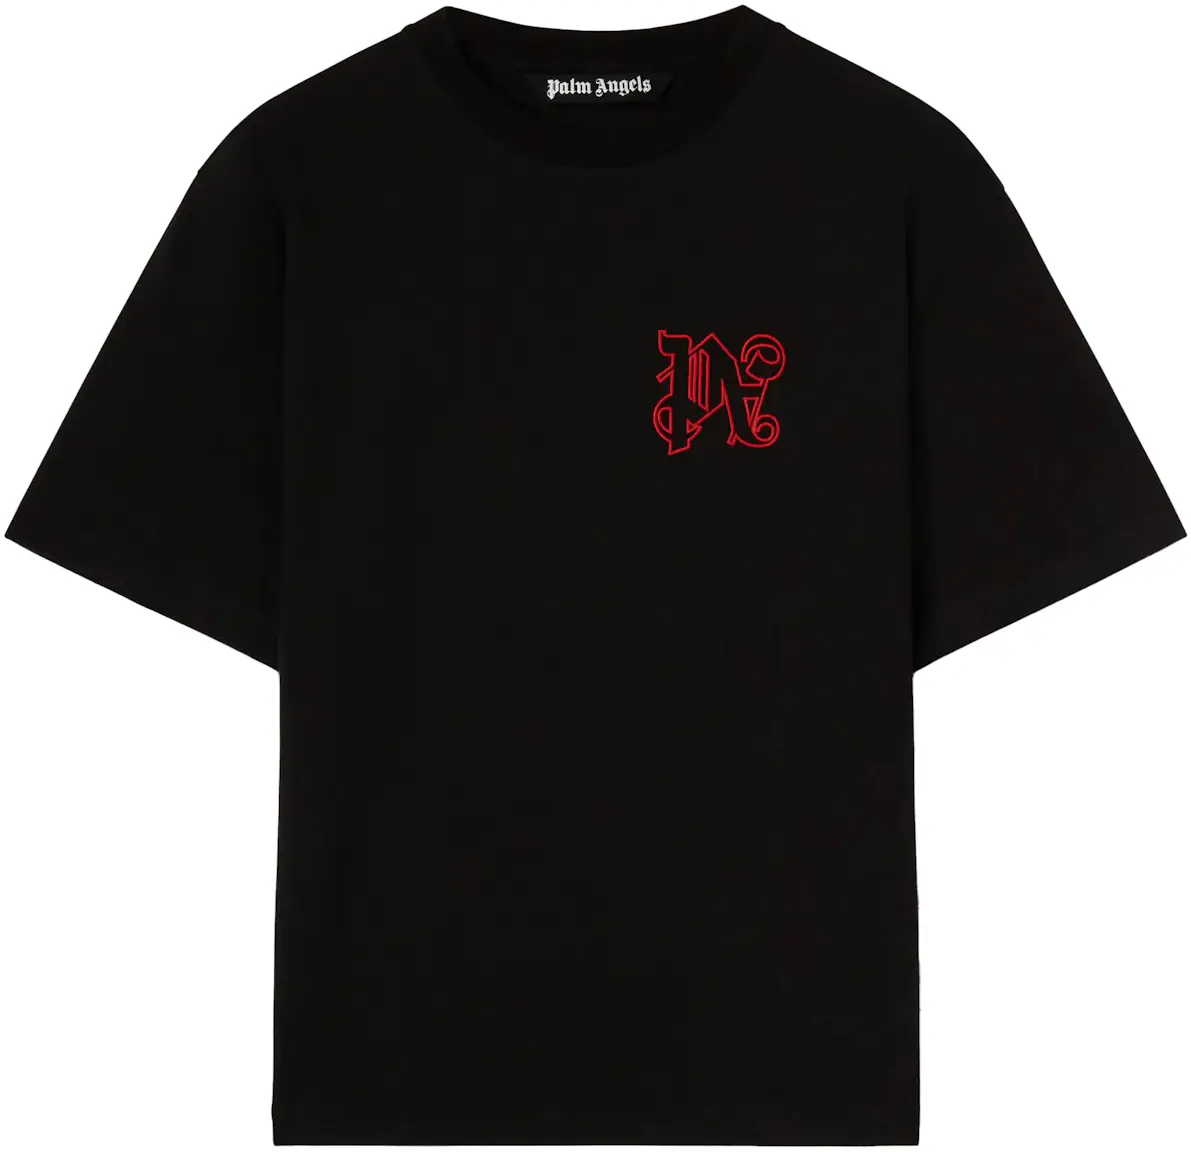 Palm Angels x Moneygram Haas F1 Team T-shirt Black/Red - SS23 - DE